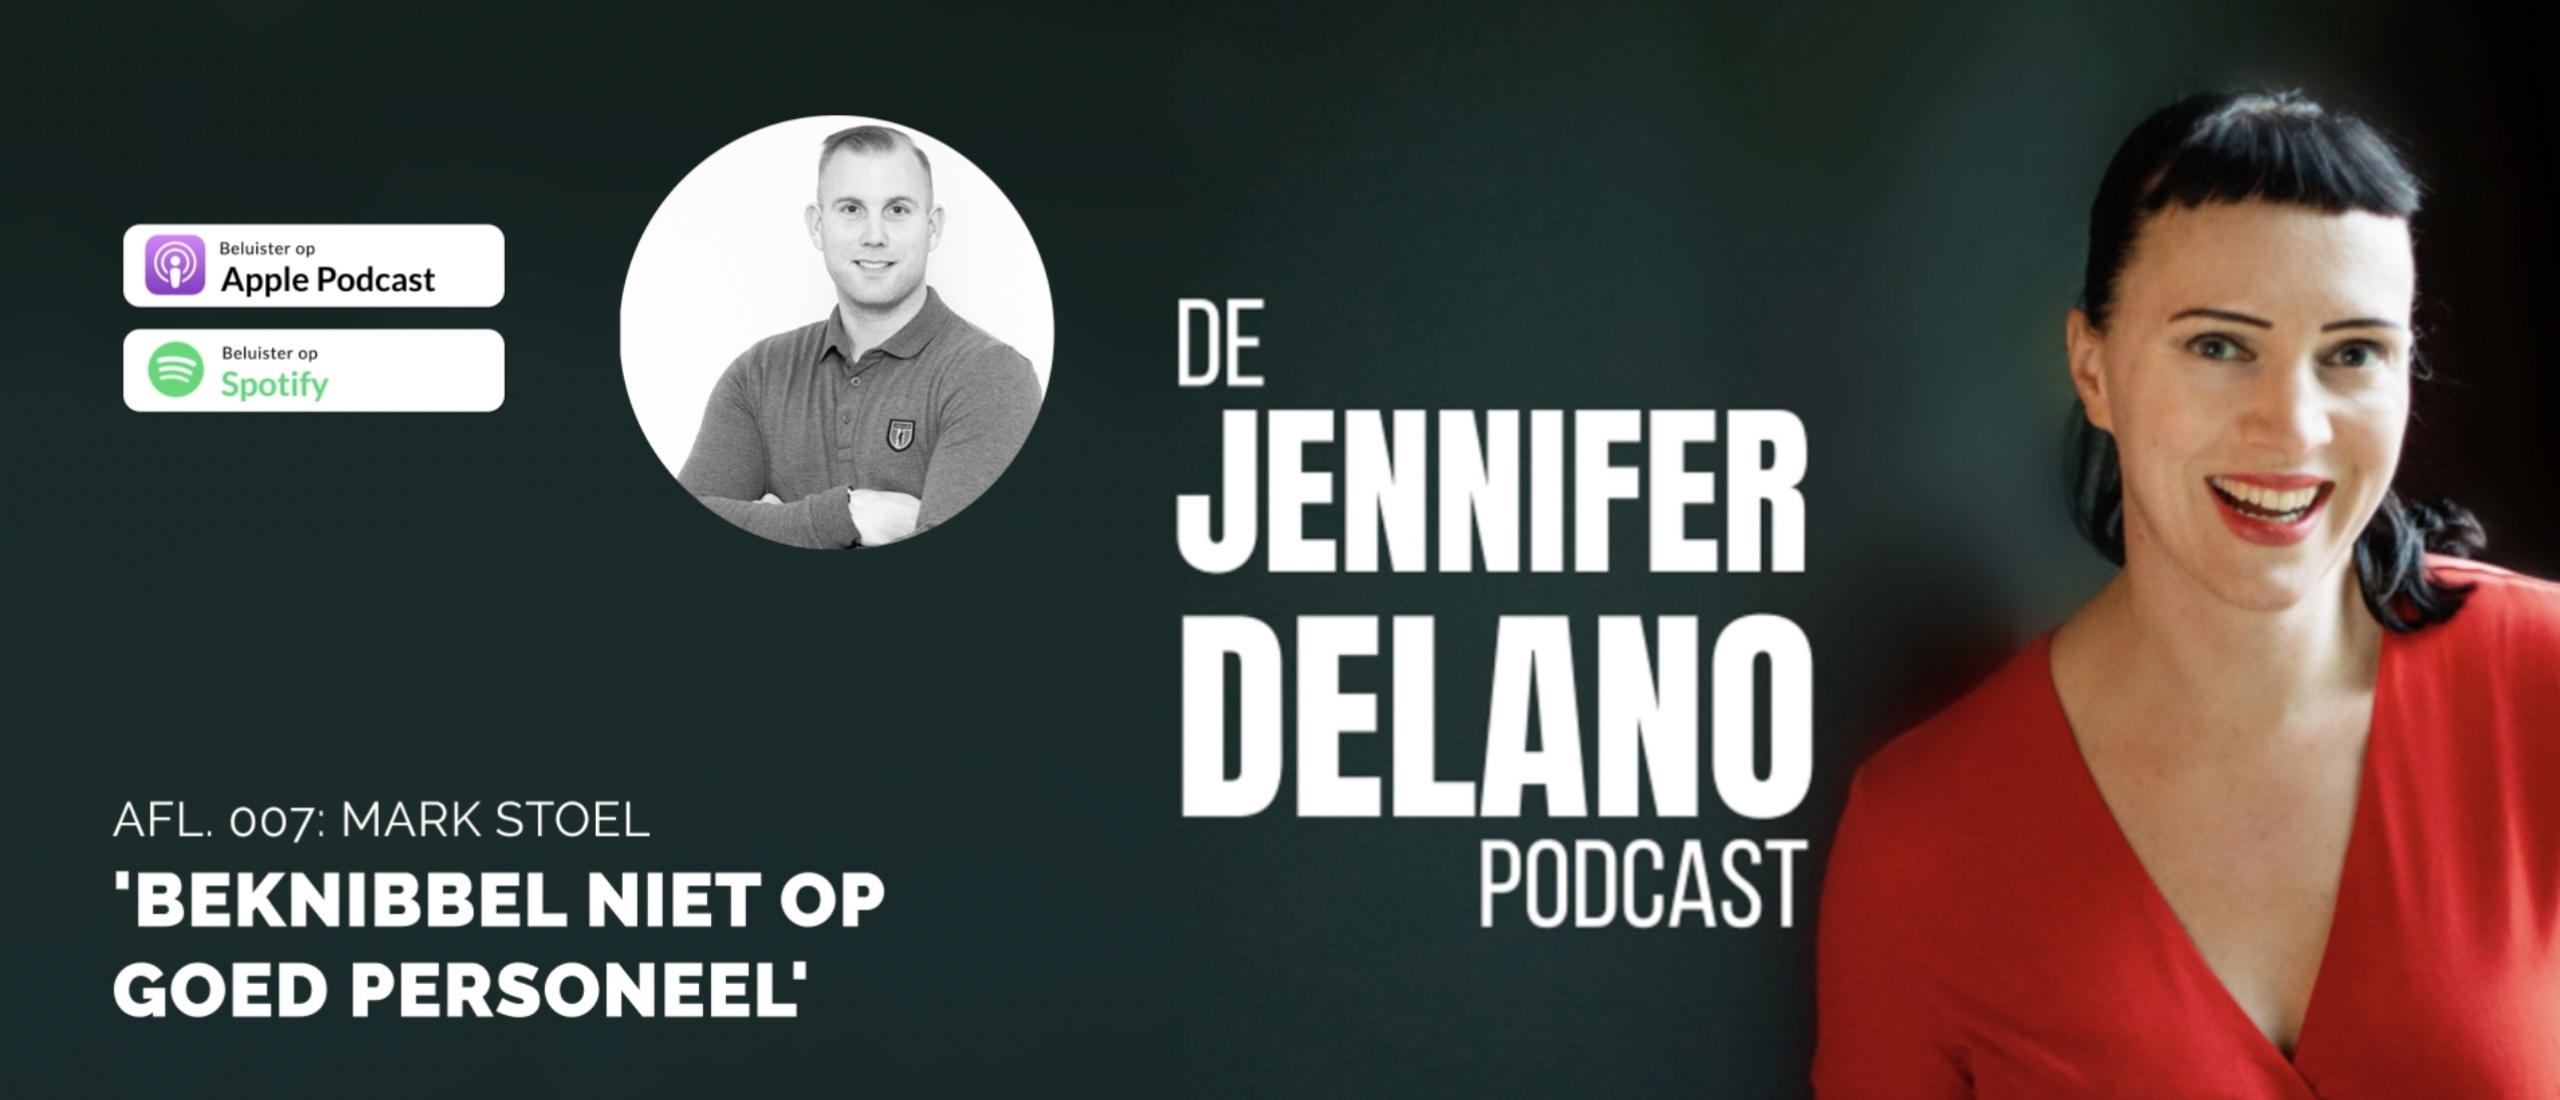 'Beknibbel niet op goed personeel' - De Jennifer Delano Podcast Afl. 007 met Mark Stoel